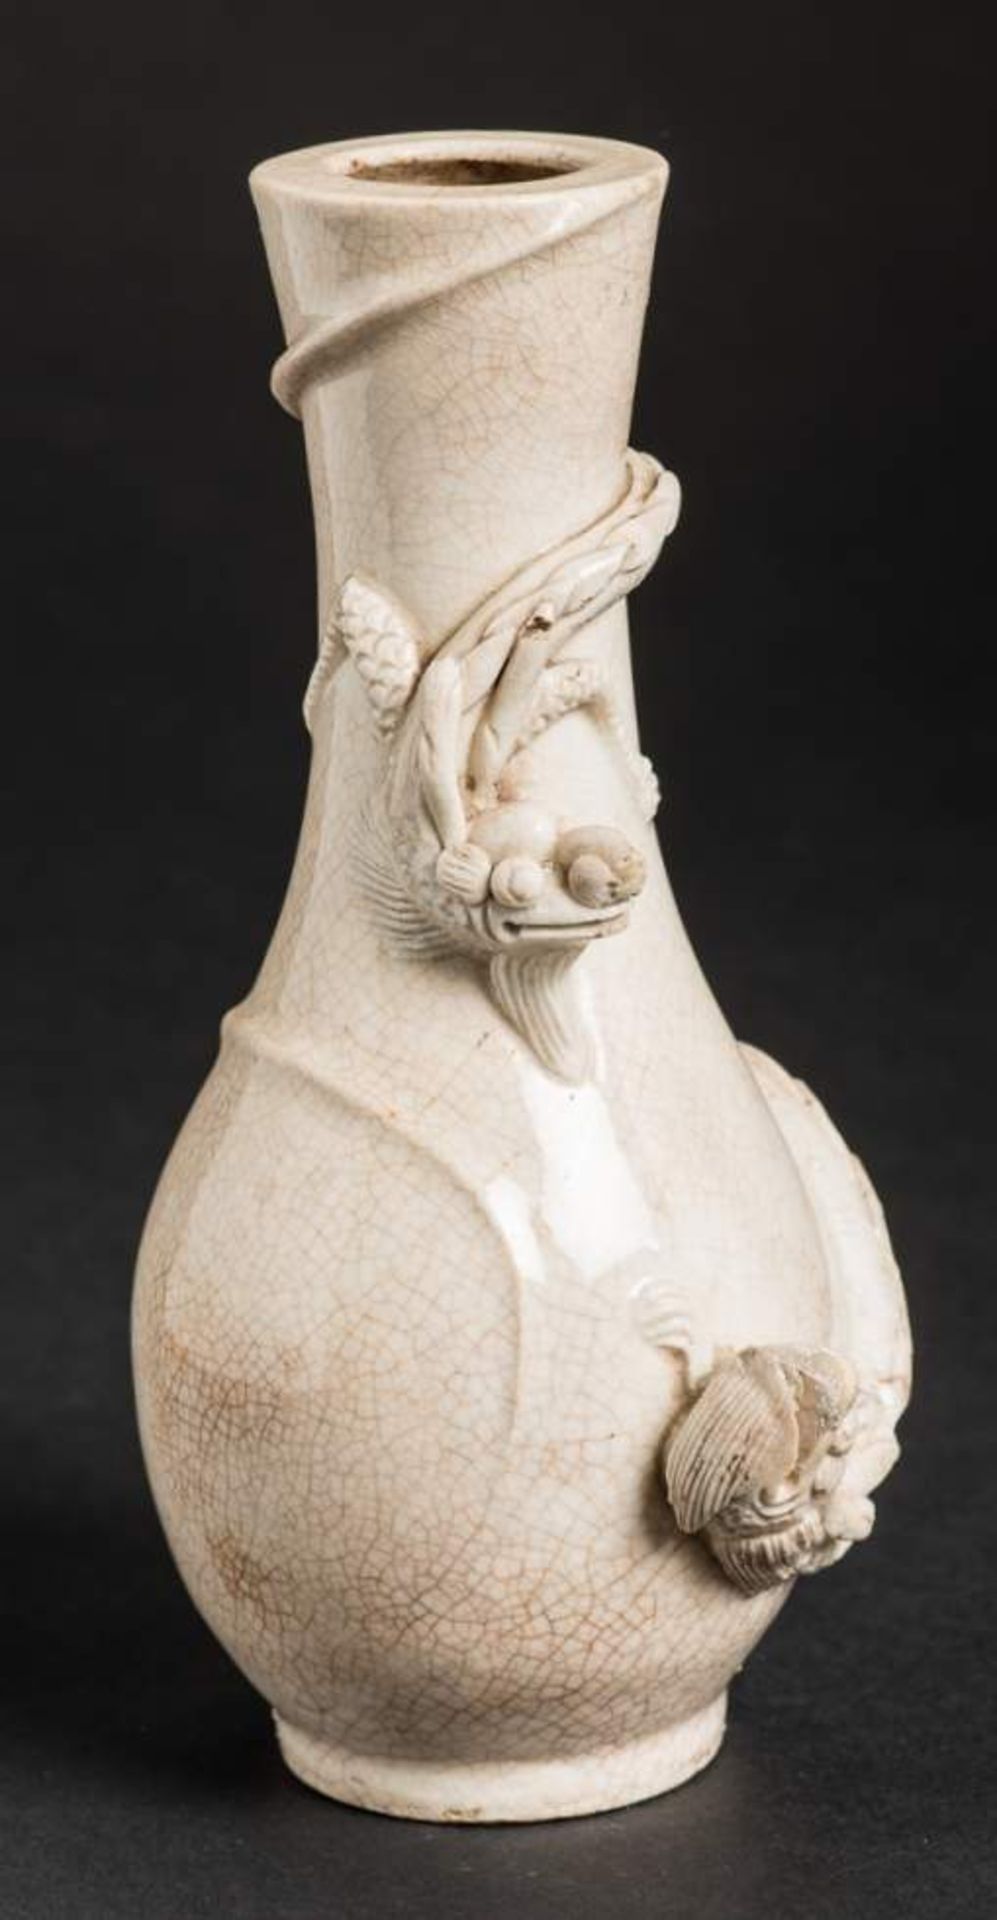 VASE MIT ZWEI DRACHEN
Biskuit Porzellan. China, späte Qing-Dynastie, ca. 19. Jh.Kleine Vase mit - Bild 8 aus 8